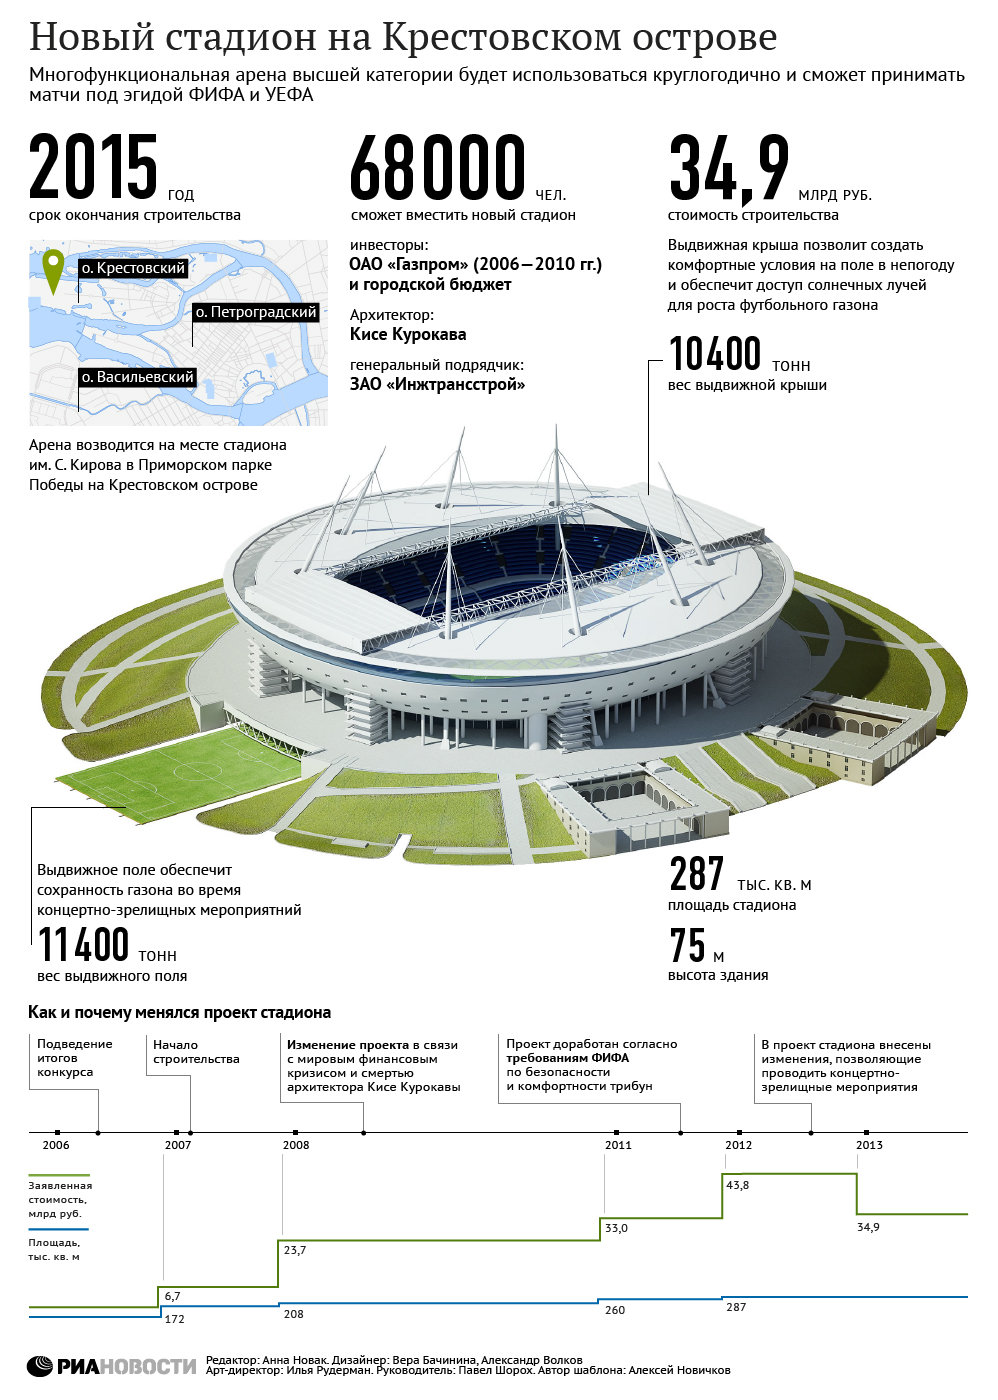 Характеристики стадиона на Крестовском острове в Петербурге